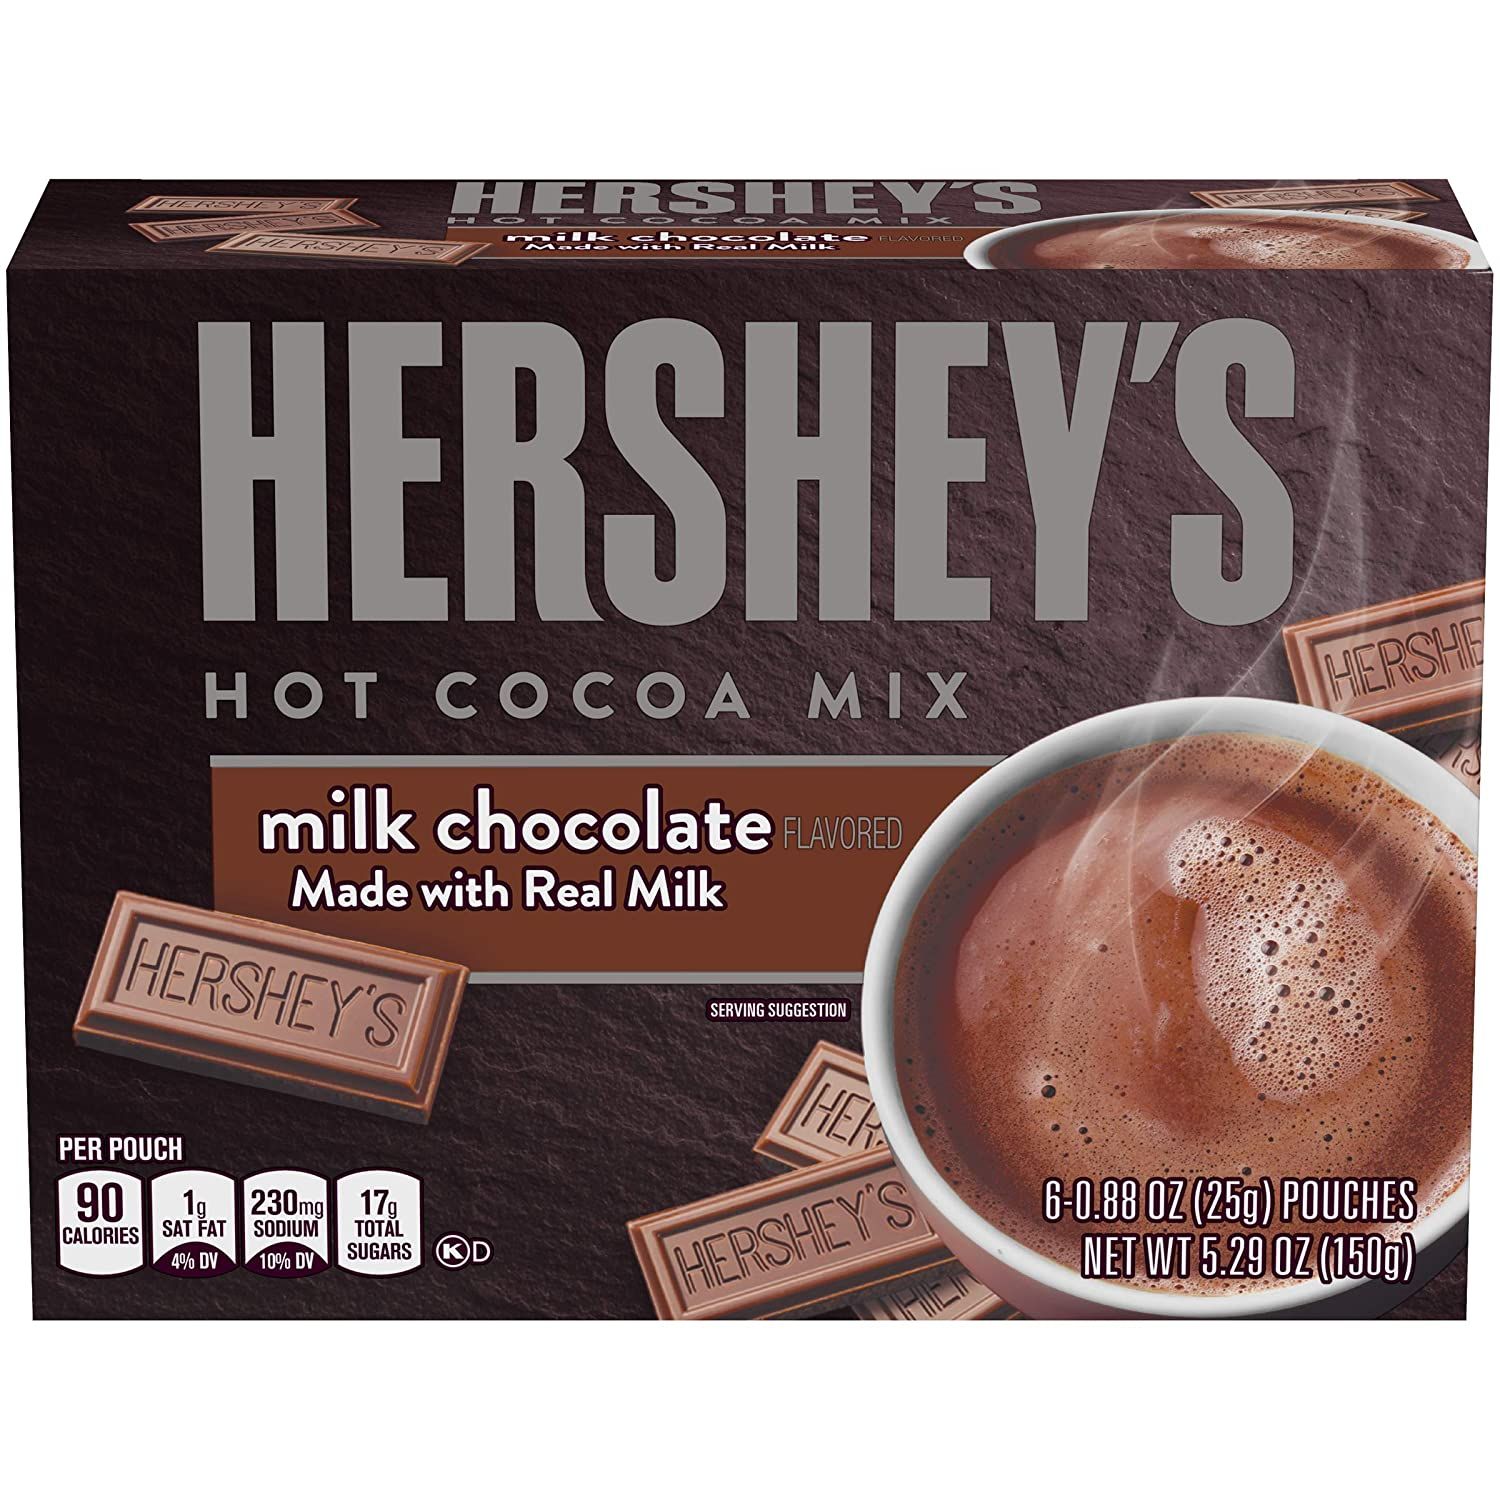 Hershey's Hot Chocolate Mix Image